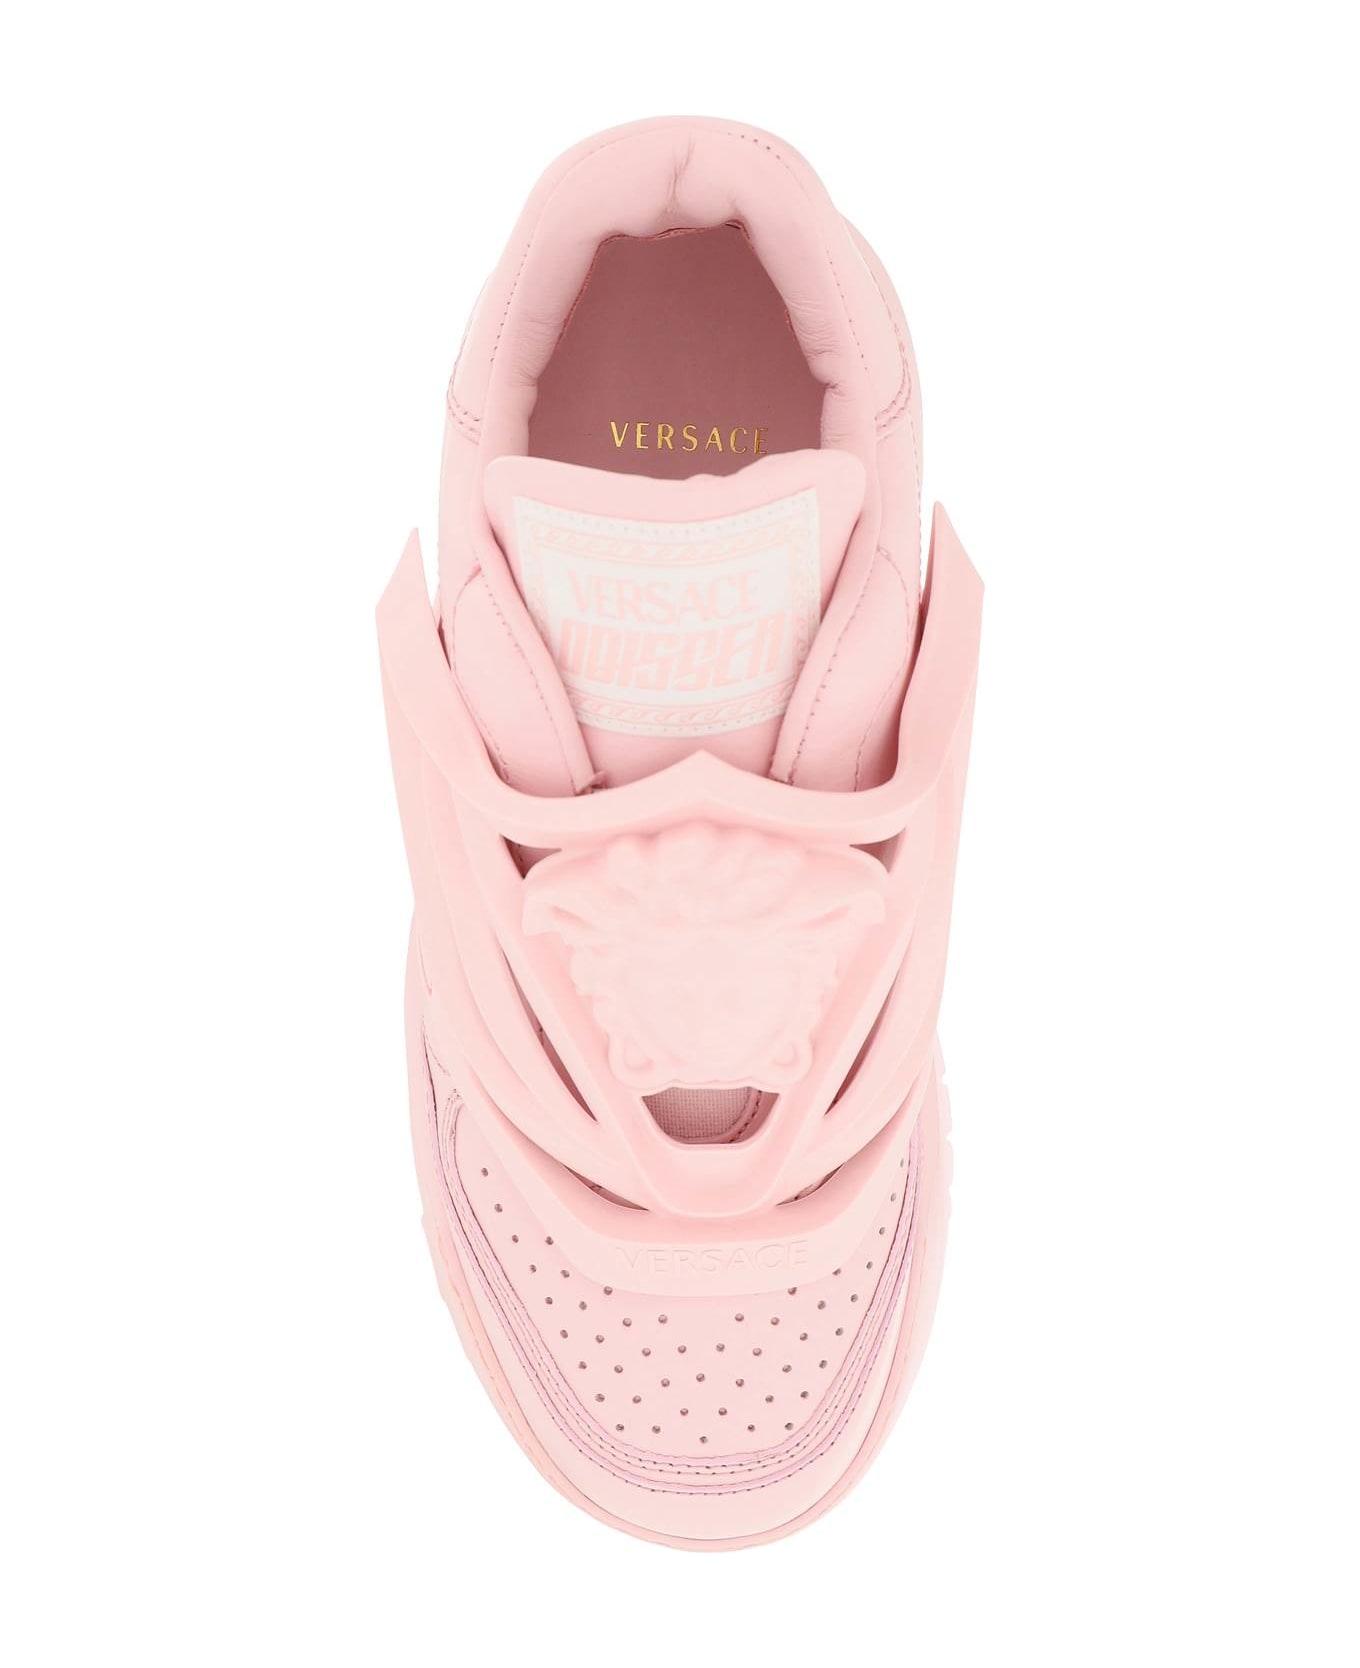 Versace Odissea Sneakers - ROSE (Pink)